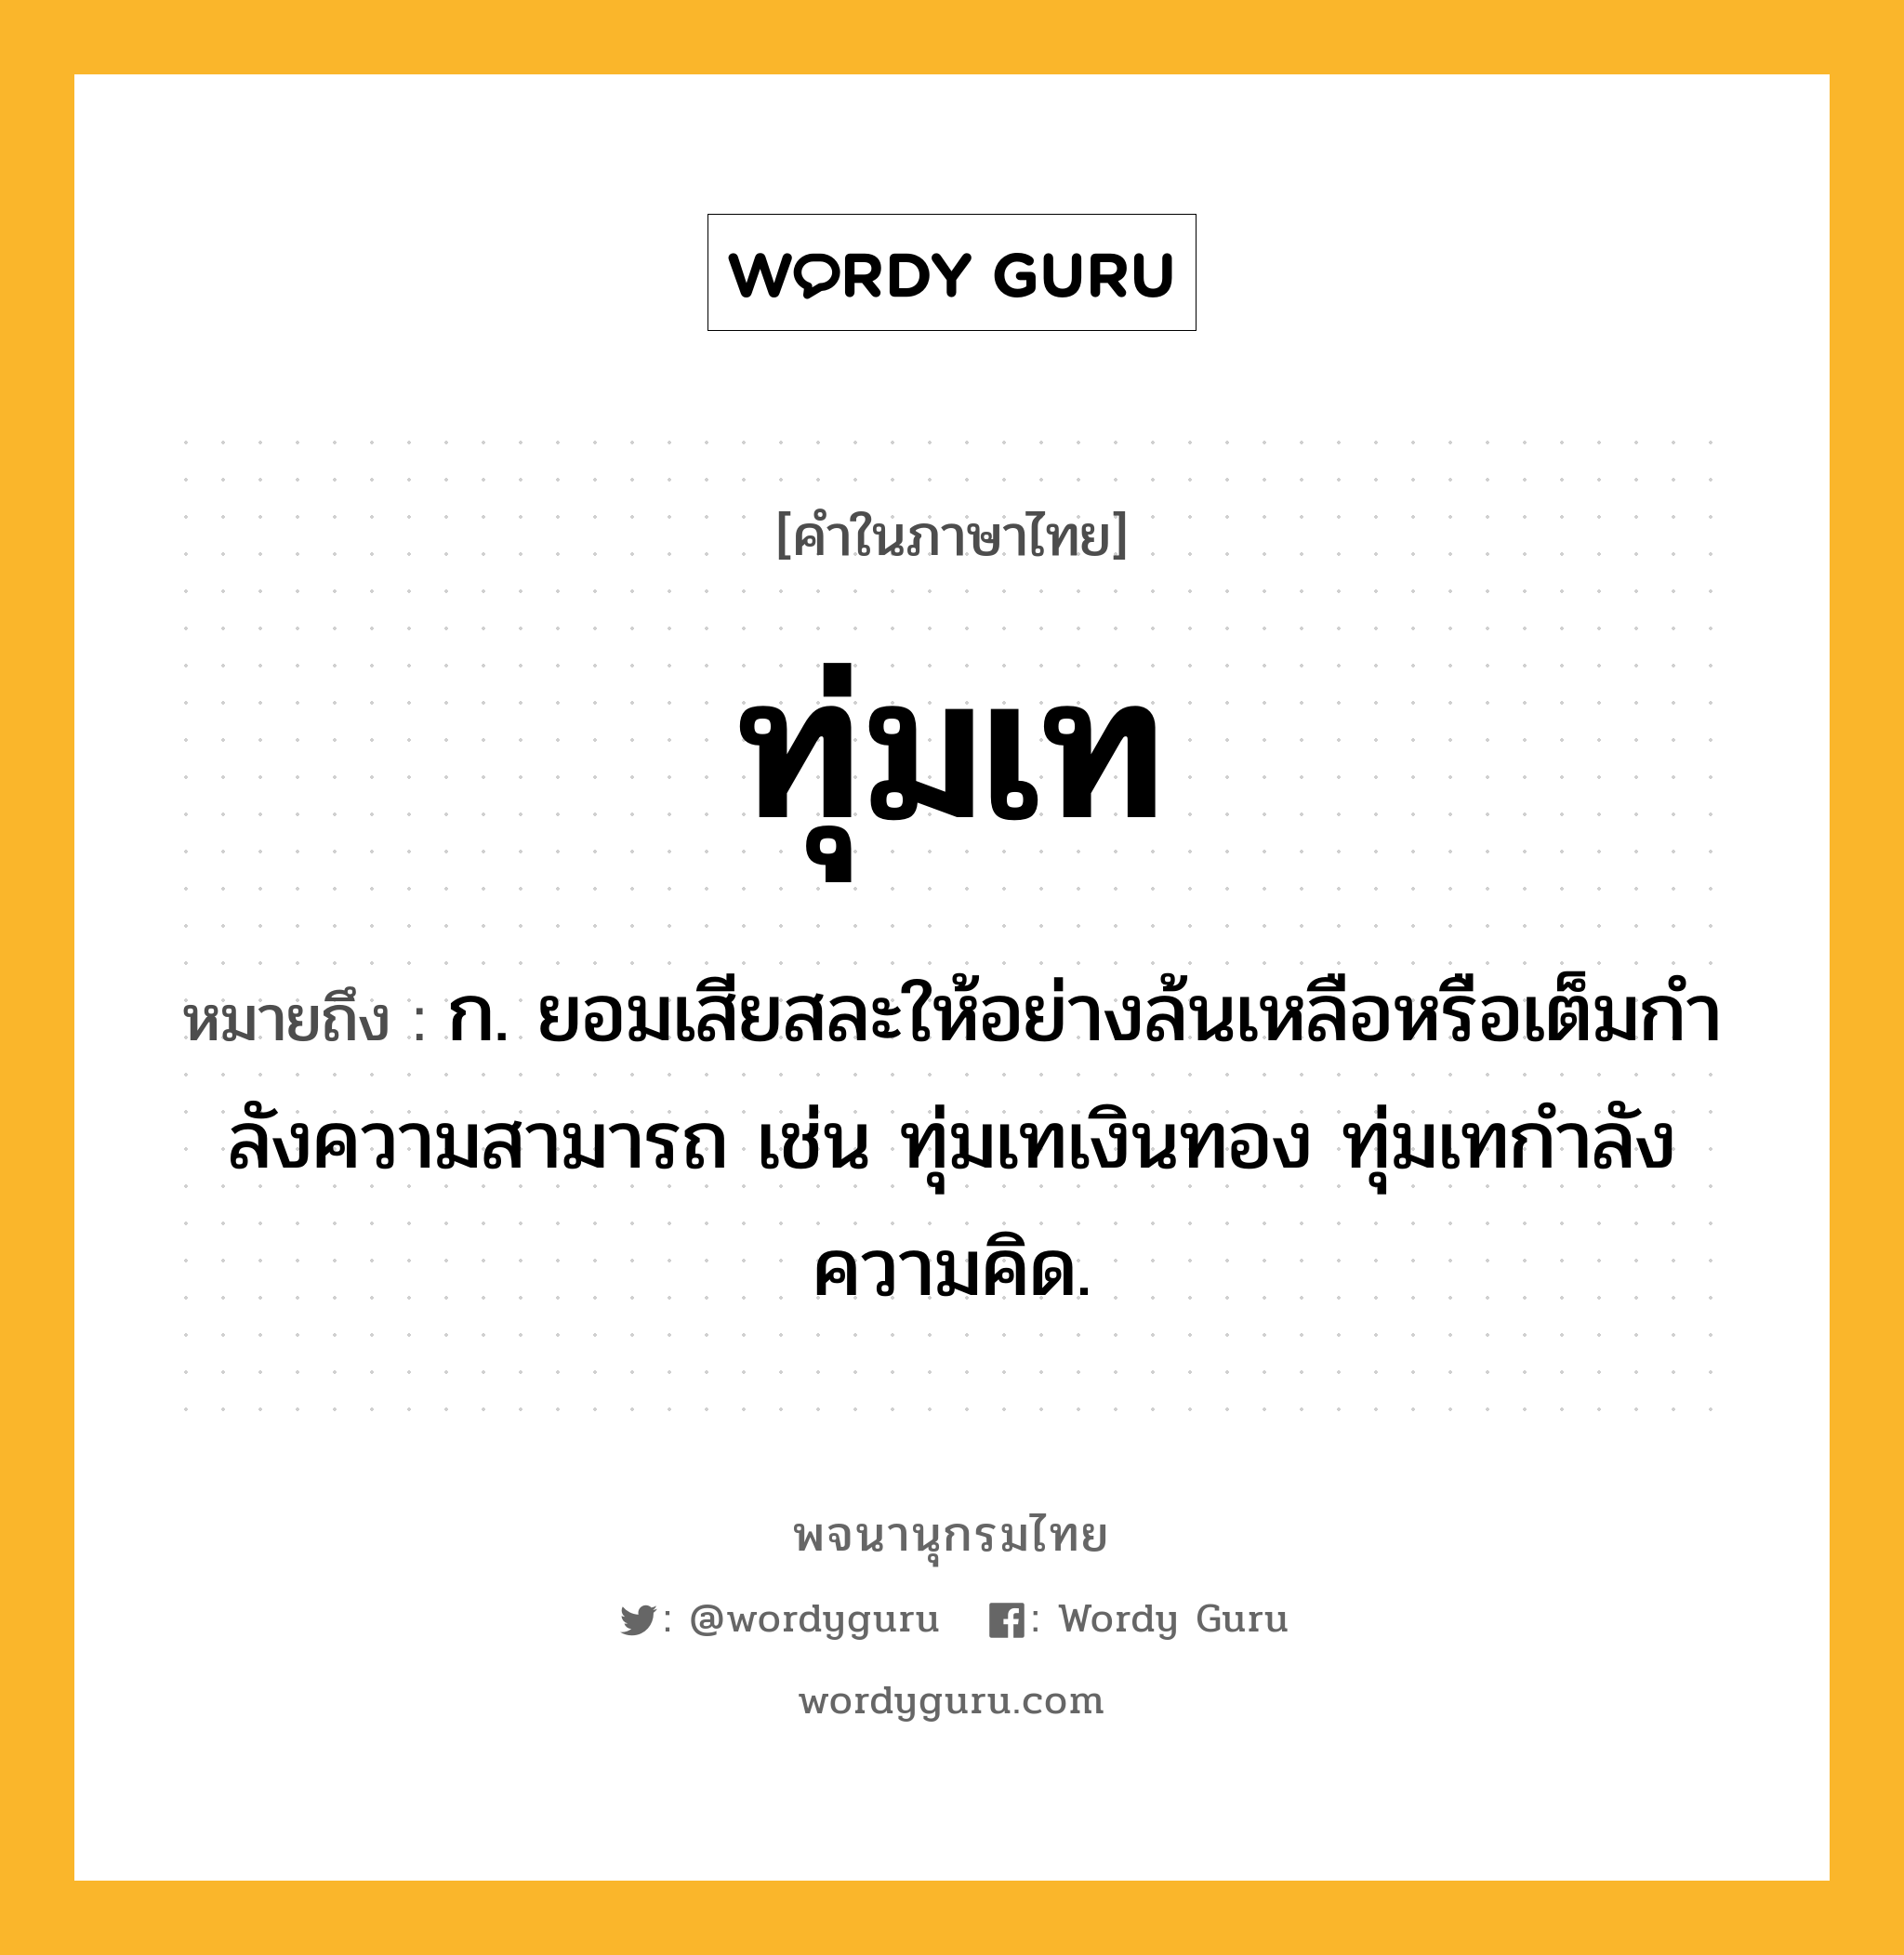 ทุ่มเท หมายถึงอะไร?, คำในภาษาไทย ทุ่มเท หมายถึง ก. ยอมเสียสละให้อย่างล้นเหลือหรือเต็มกําลังความสามารถ เช่น ทุ่มเทเงินทอง ทุ่มเทกําลังความคิด.